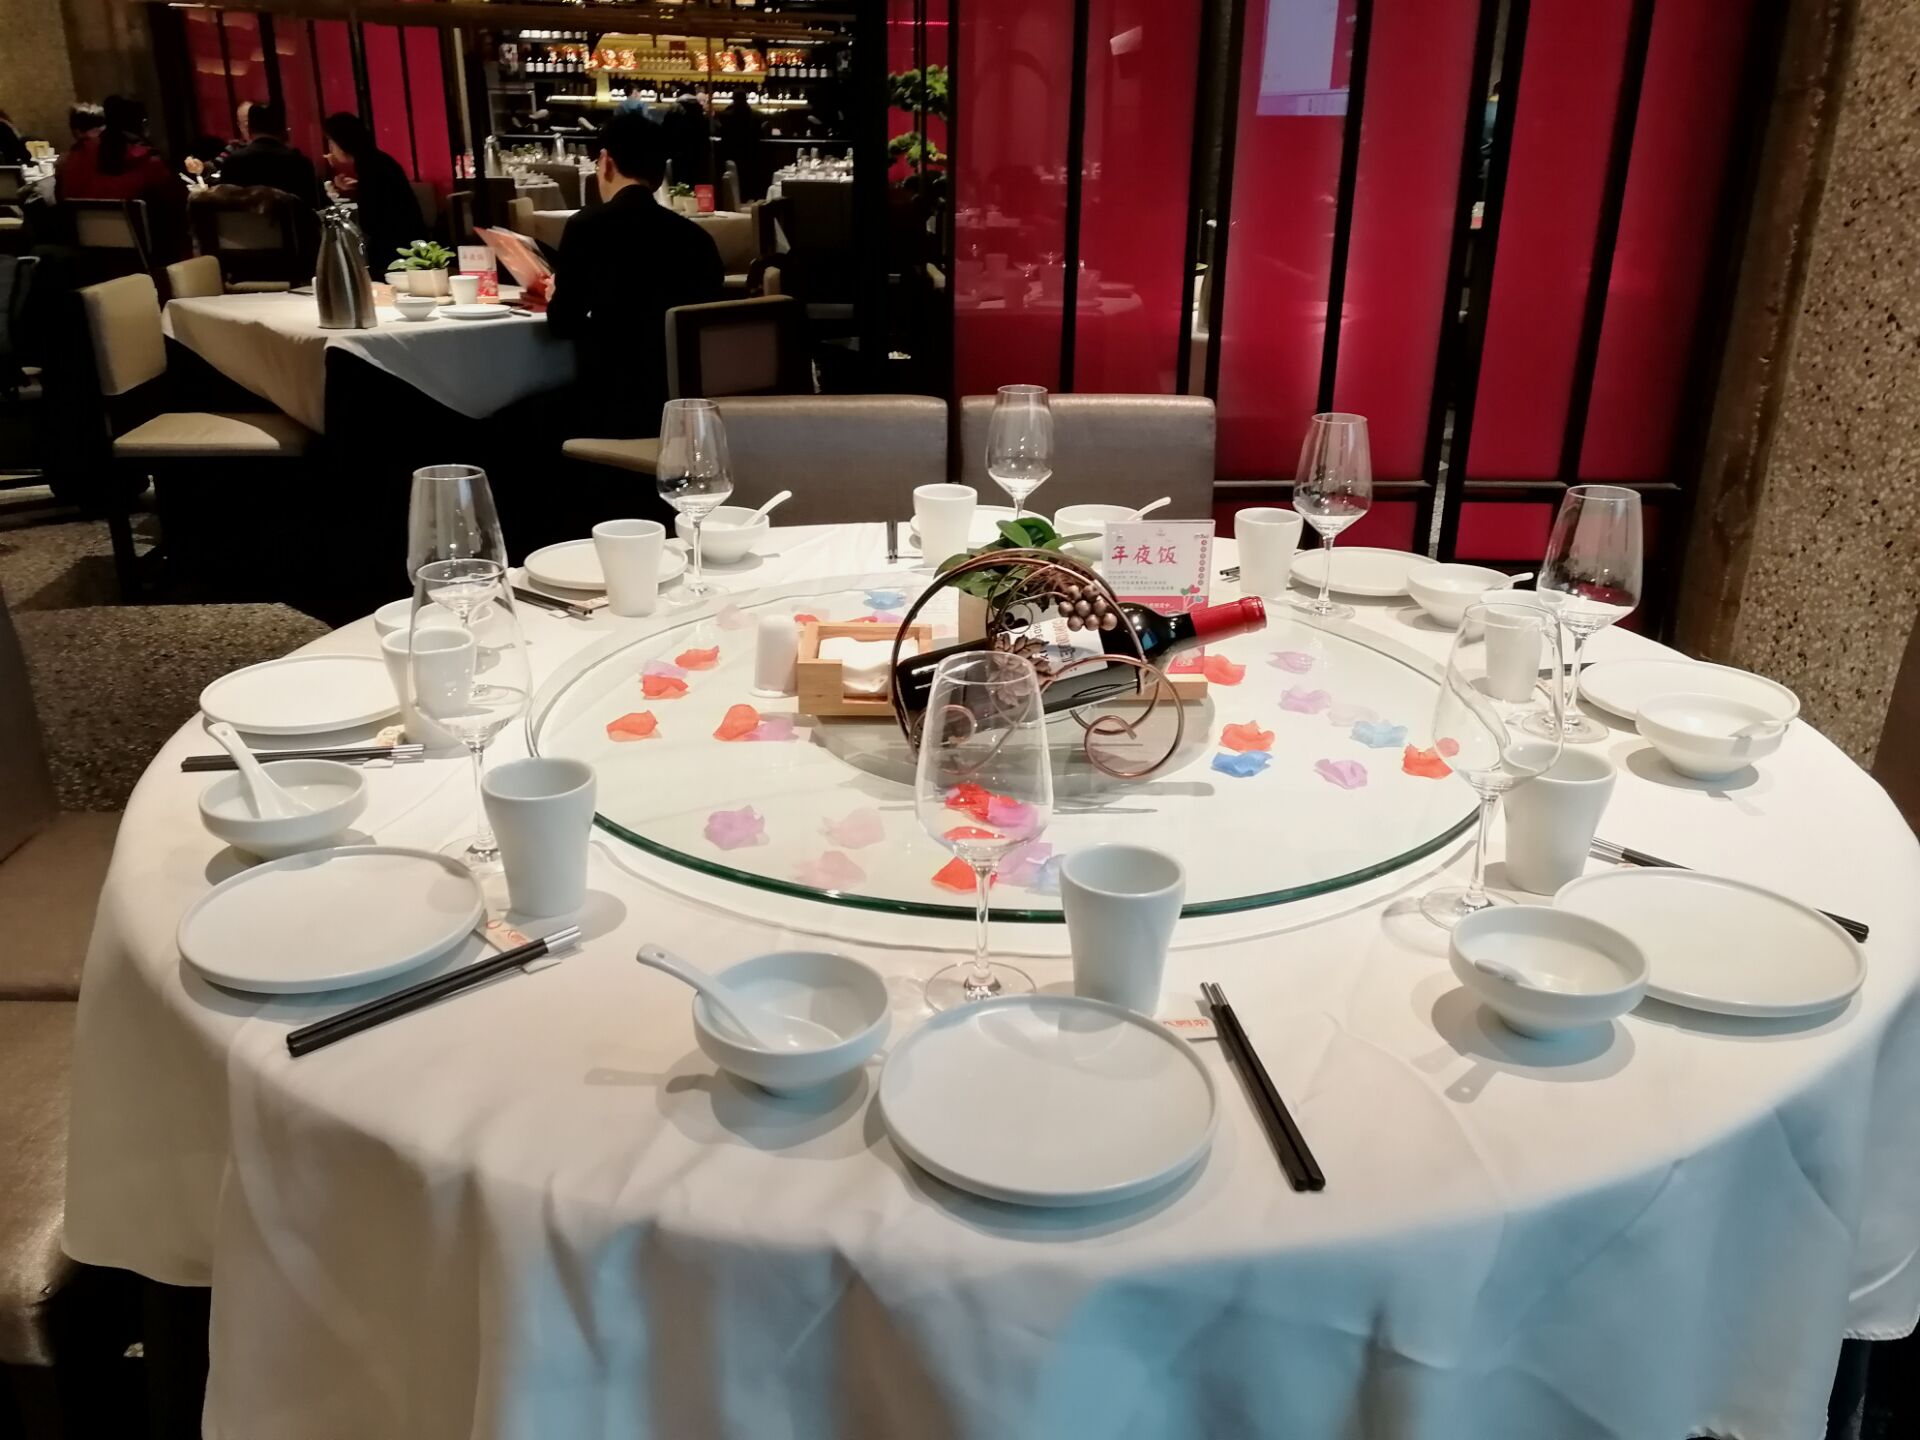 整洁的餐桌,雪白的餐具,转盘下的花瓣摆设显然增加了不少生机